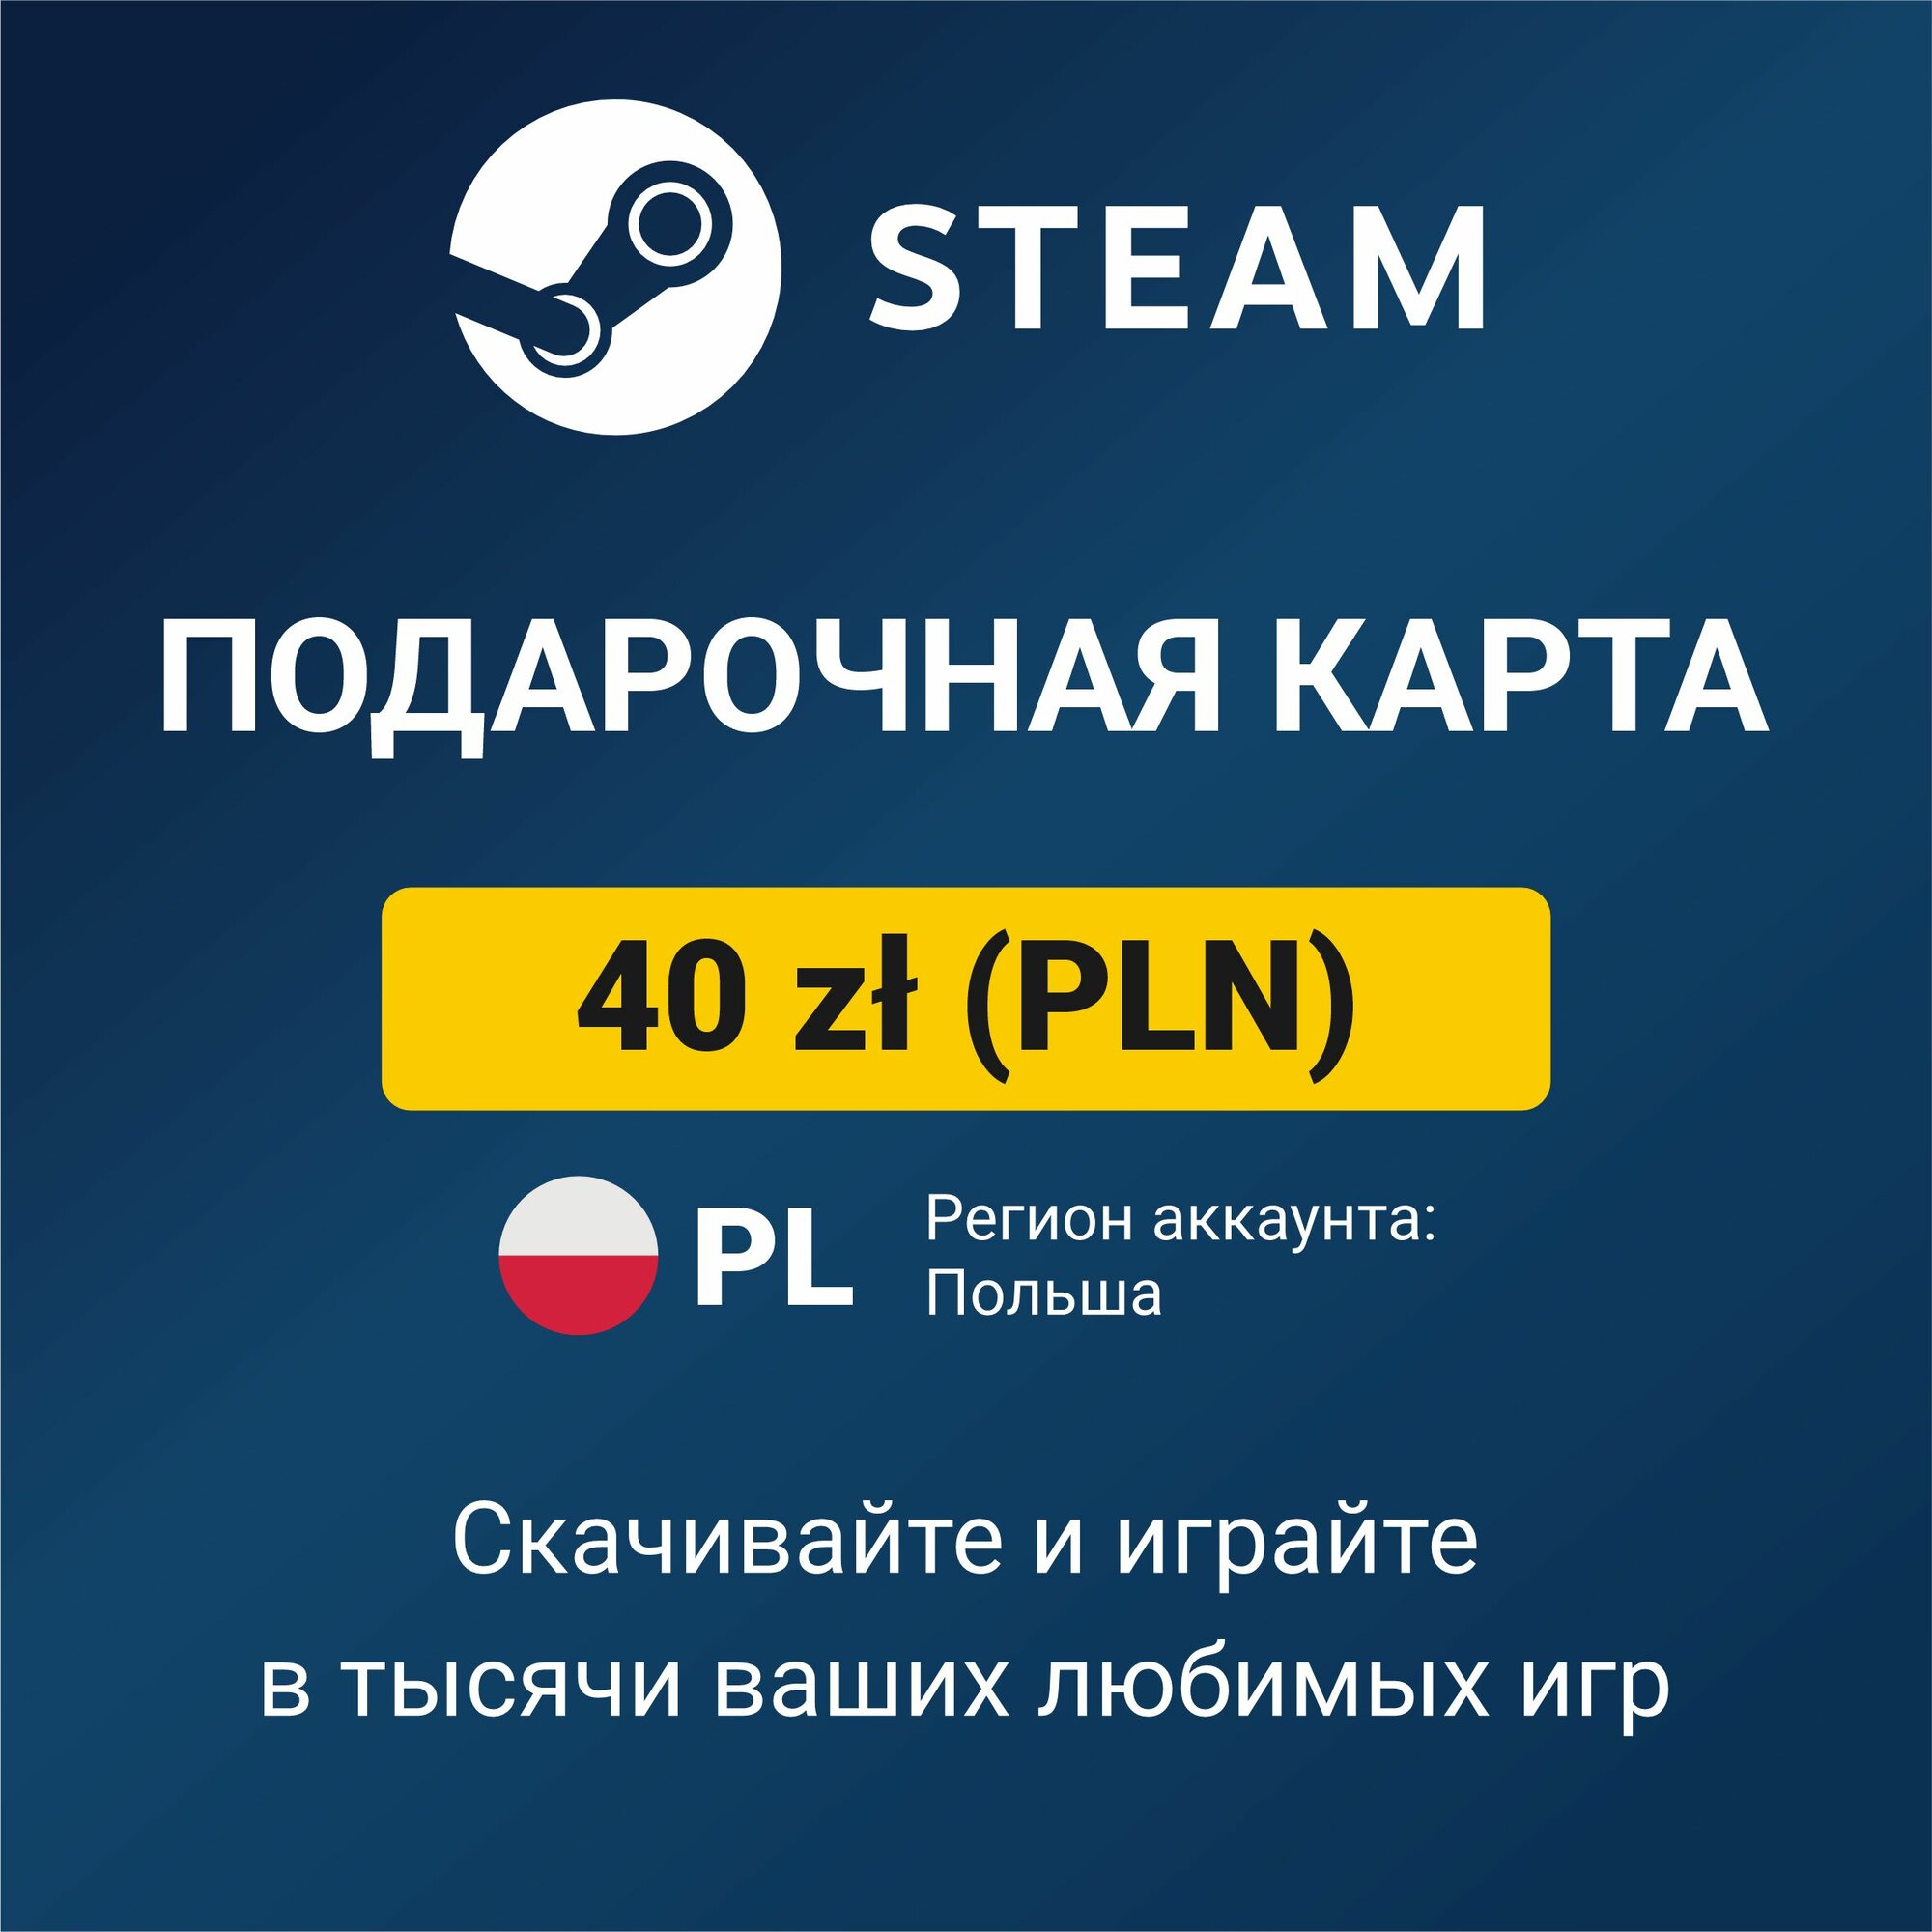 Пополнение кошелька Steam 25 PLN (регион аккаунта: Польша) цифровой код активации/подарочная карта